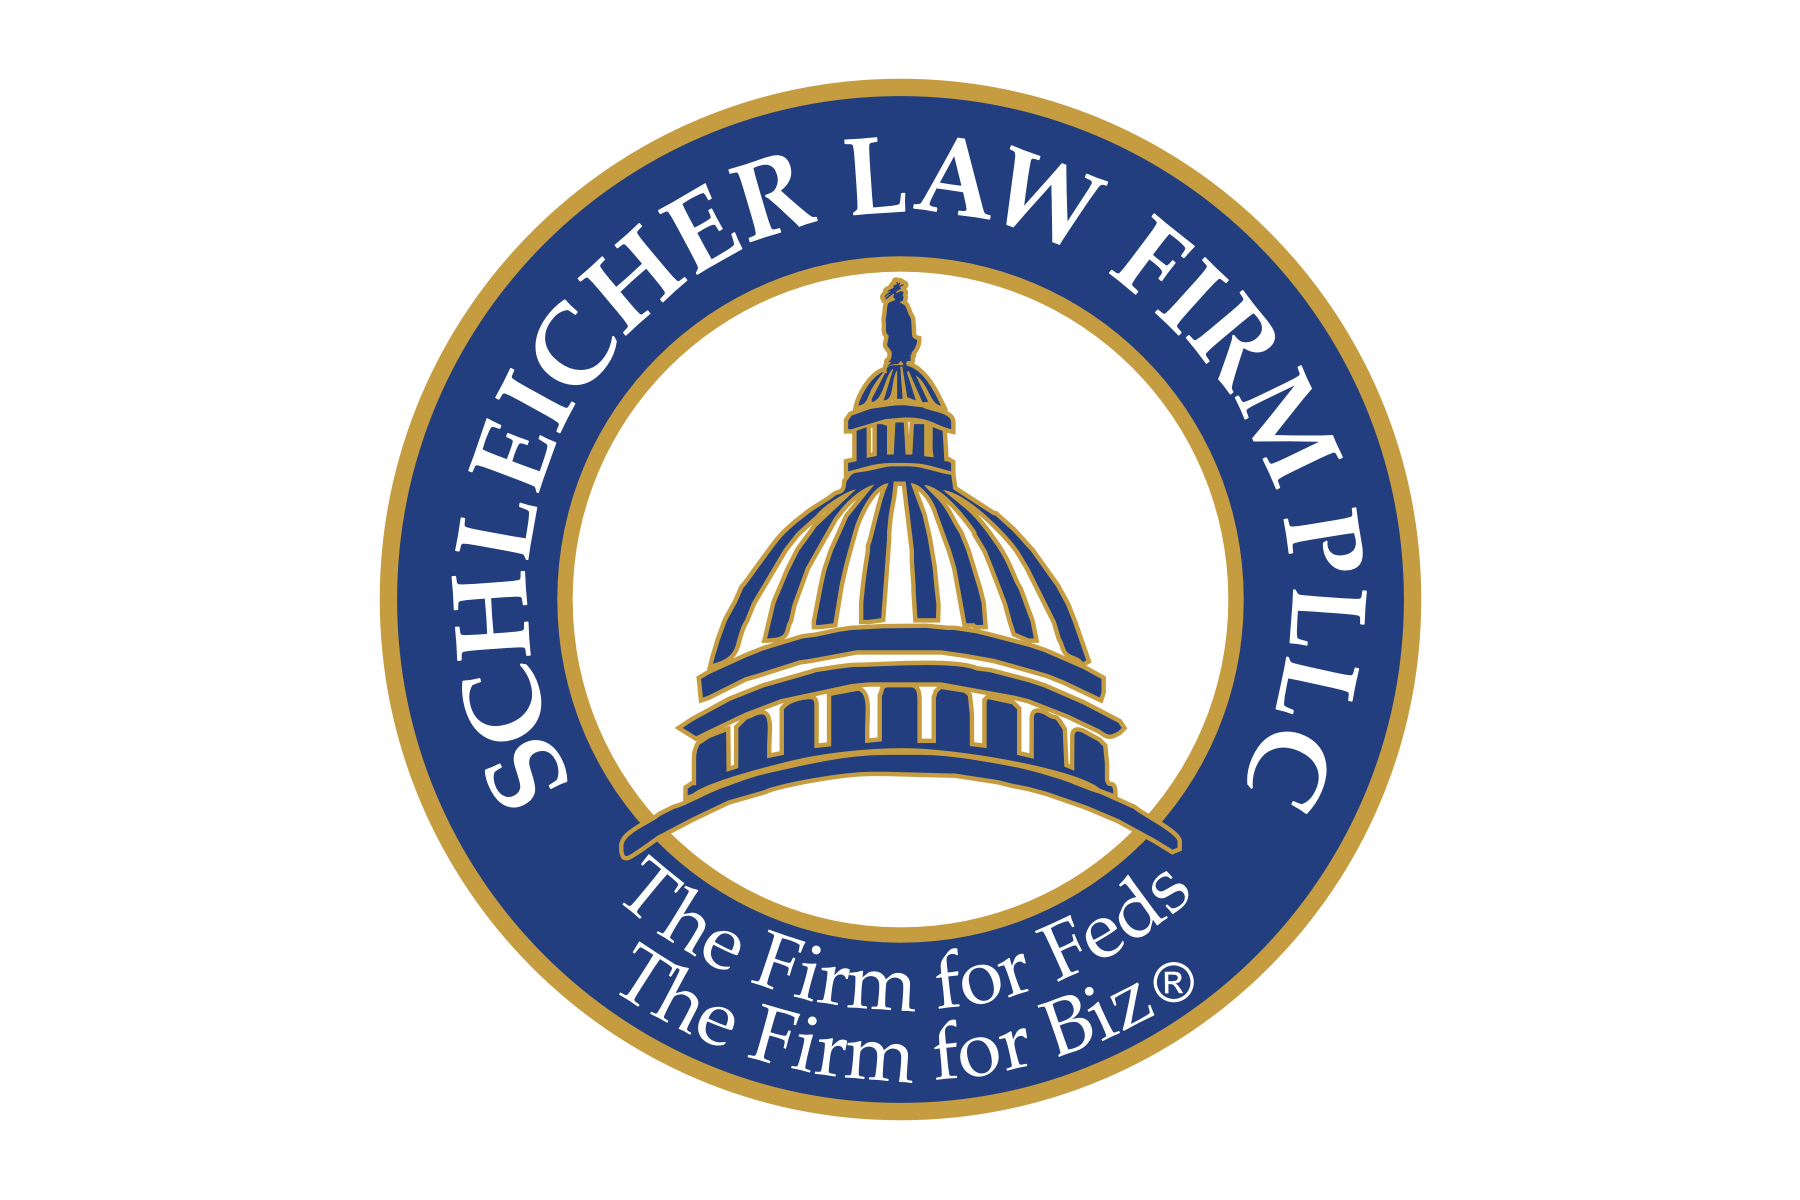 Schleicher Law Firm, PLLC